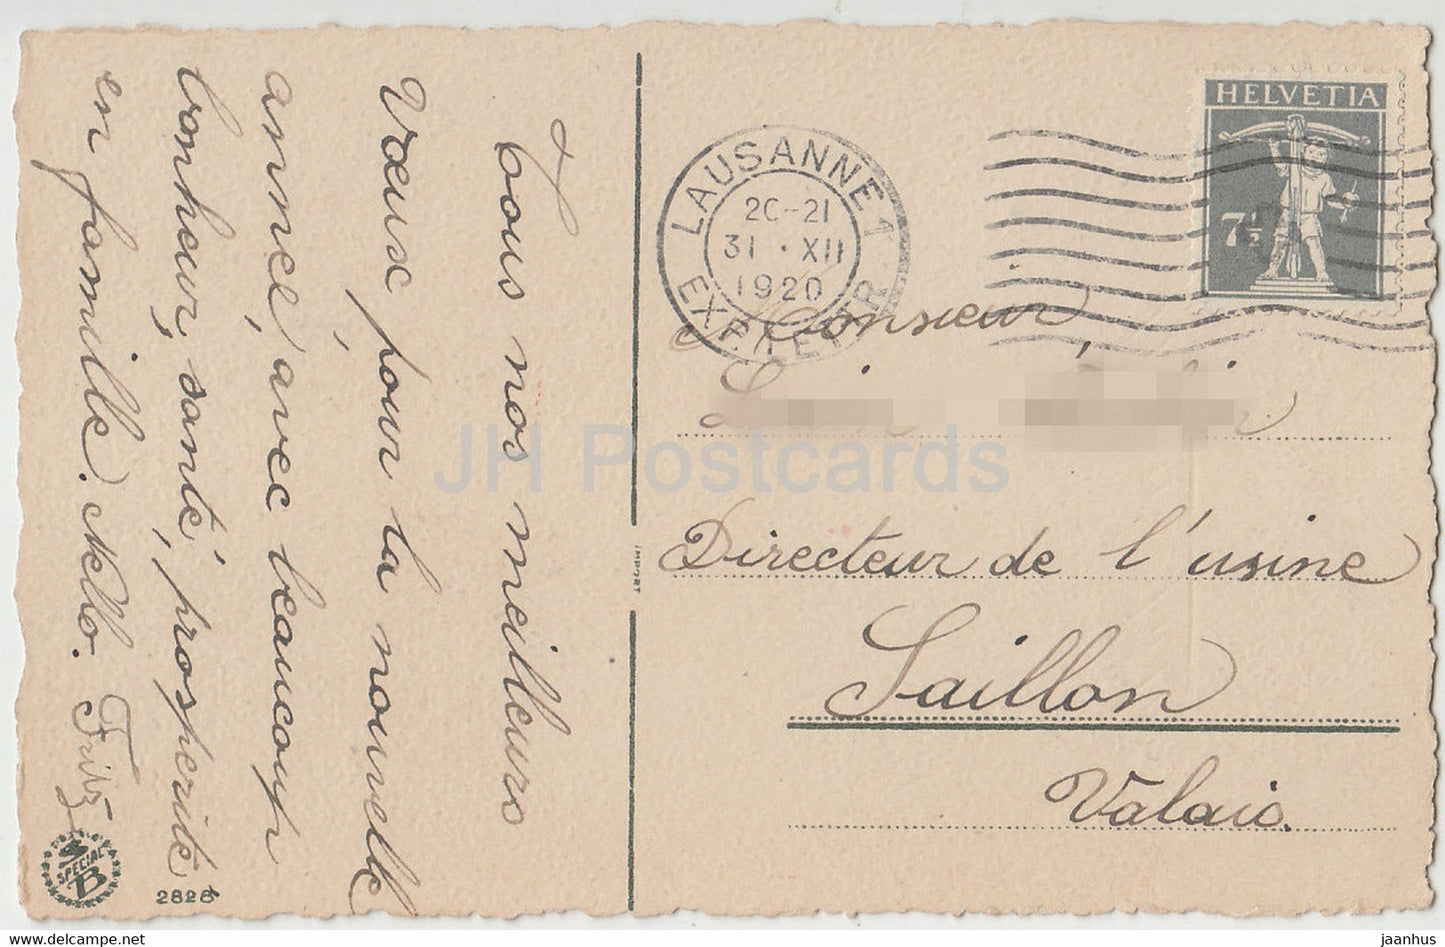 Carte de voeux d'anniversaire - Bonne Fête - fleurs dans un panier - 2828 - illustration - carte postale ancienne - 1920 - Suisse occasion